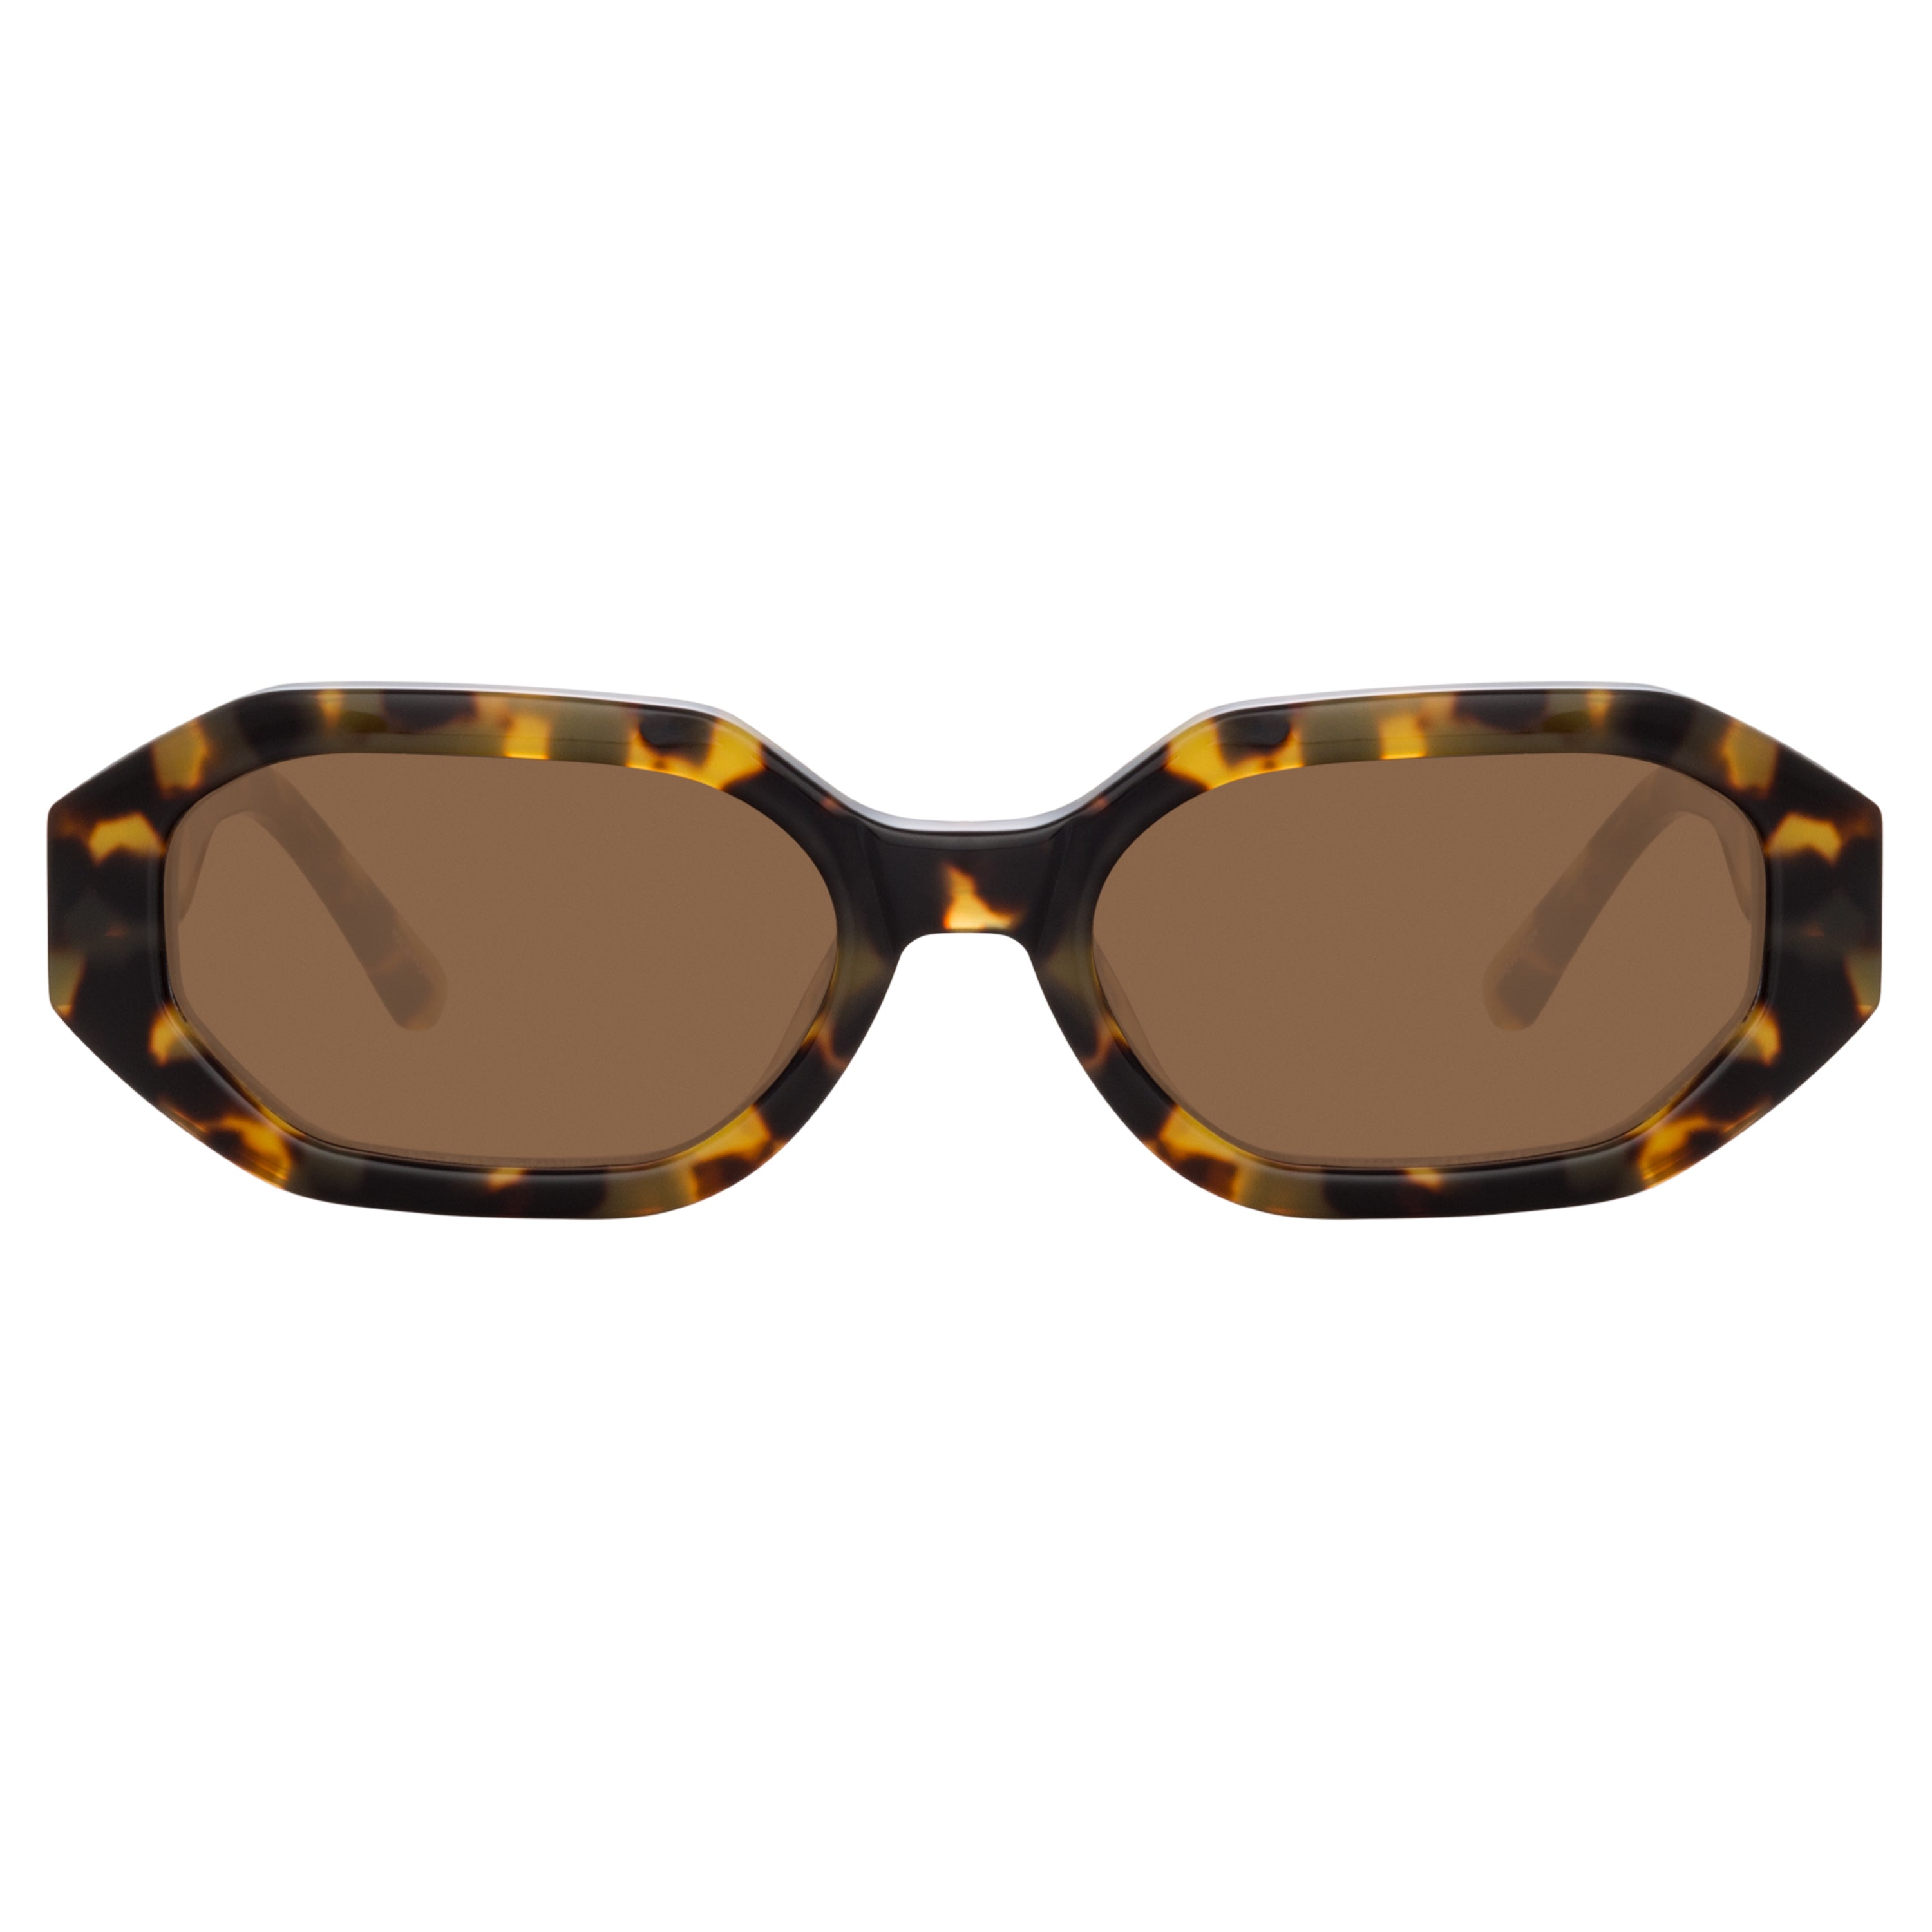 The Attico Irene Angular Sunglasses in Tortoiseshell and Brown